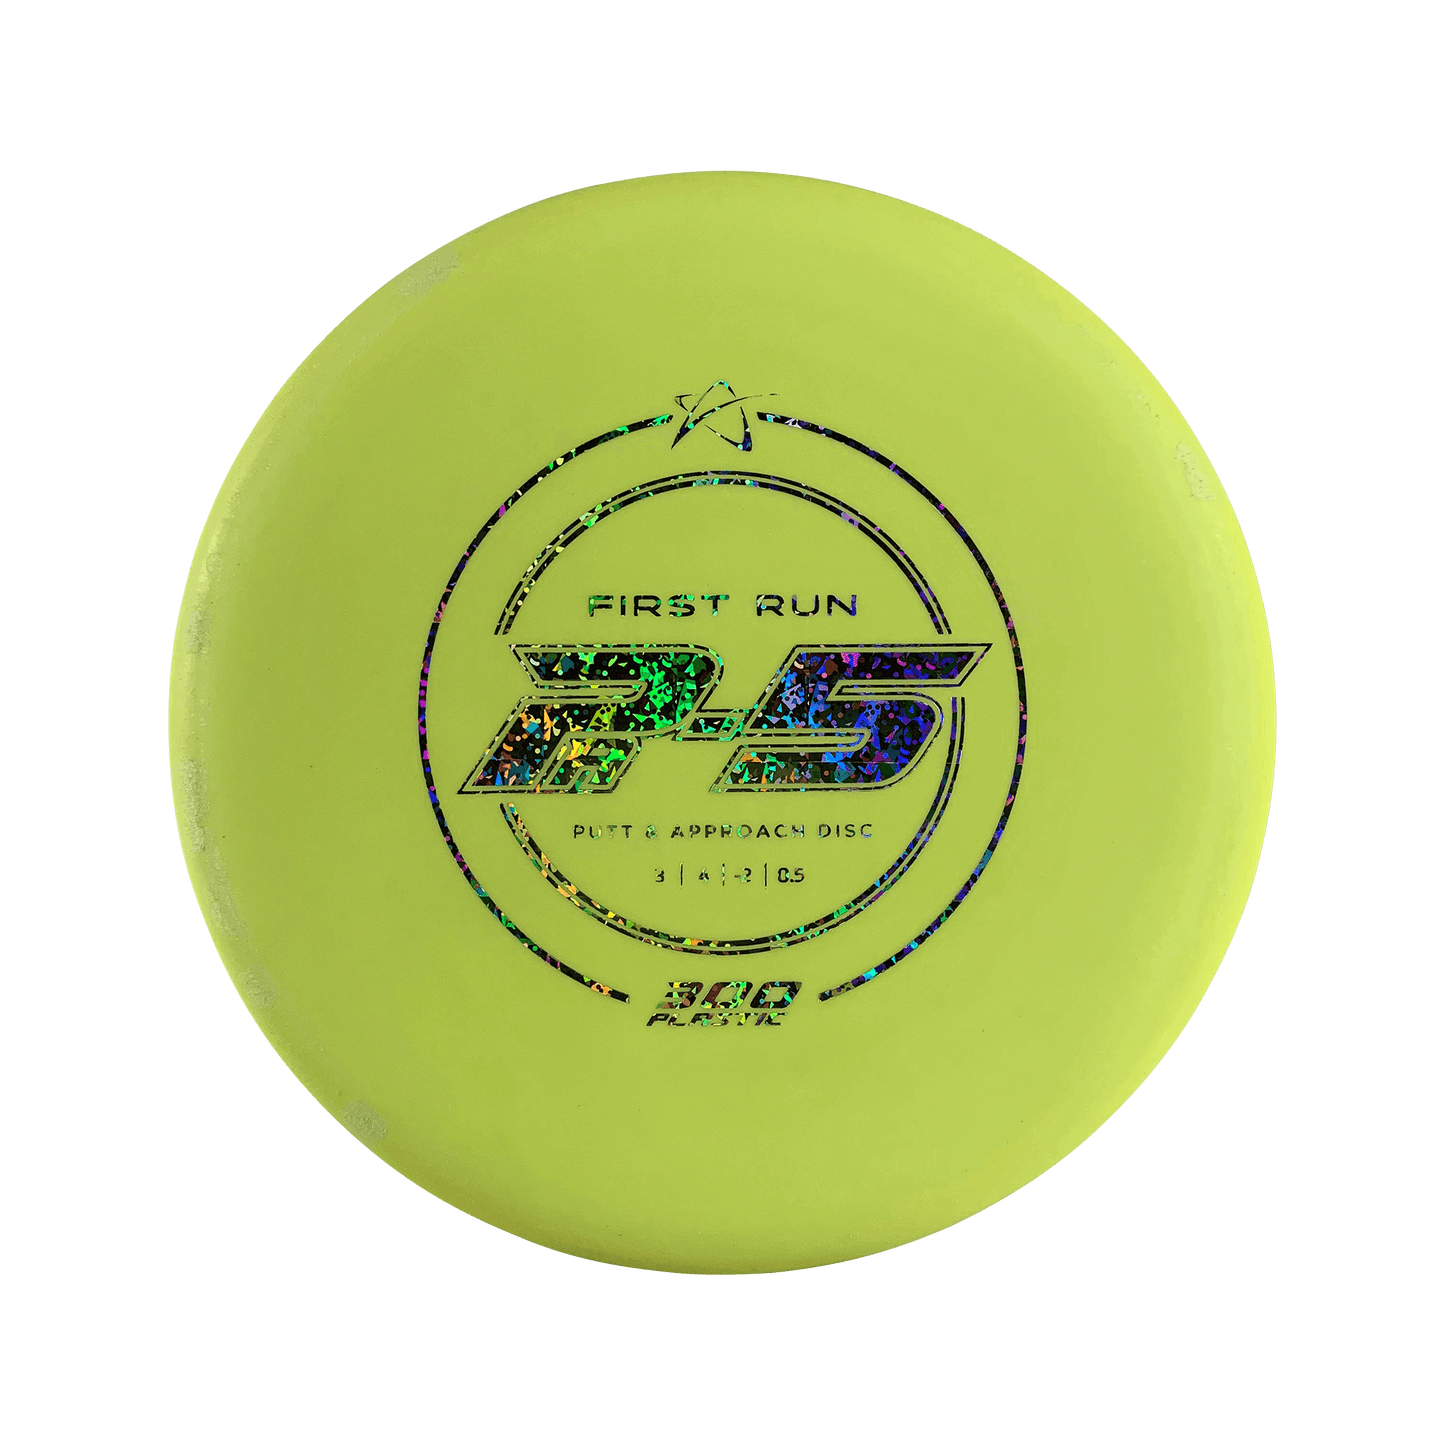 300 PA-5 - First Run Disc Prodigy yellow 177 